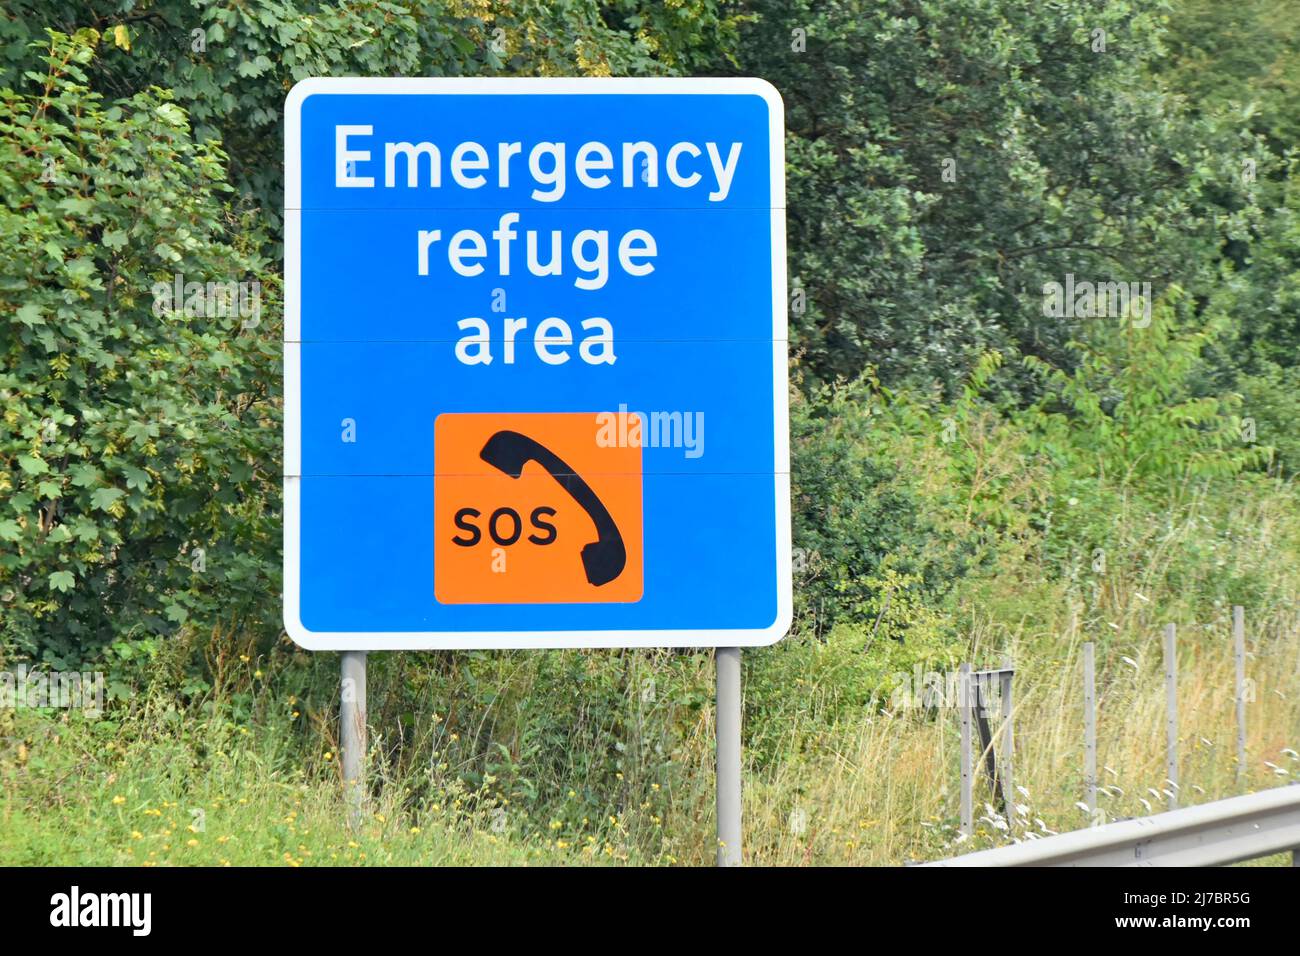 Nahaufnahme des blauen Straßenschildes neben der umstrittenen, nicht schulterharten Smart M25 Autobahn, eine halbe Meile vor dem Notruffelder des SOS-Telefons in England, Großbritannien Stockfoto